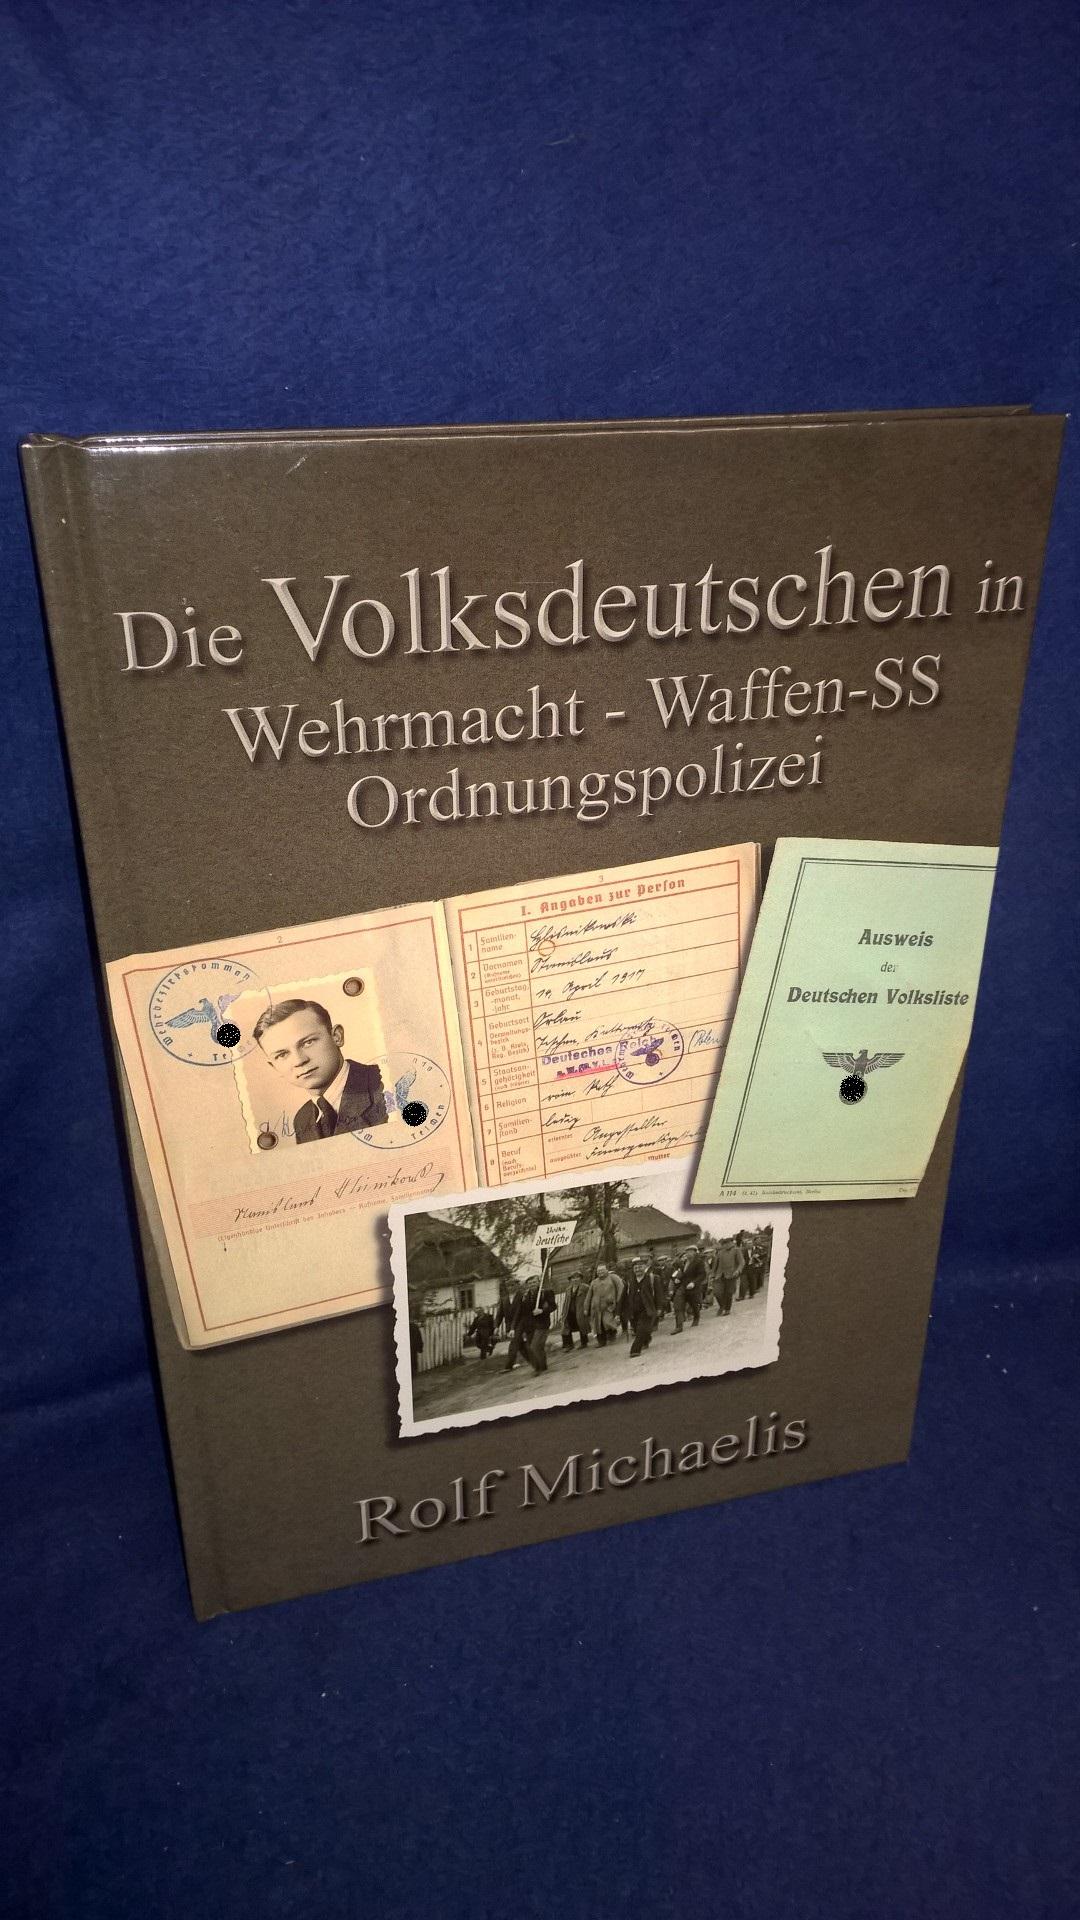 Die Volksdeutschen in Wehrmacht - Waffen-SS - Ordnungspolizei.